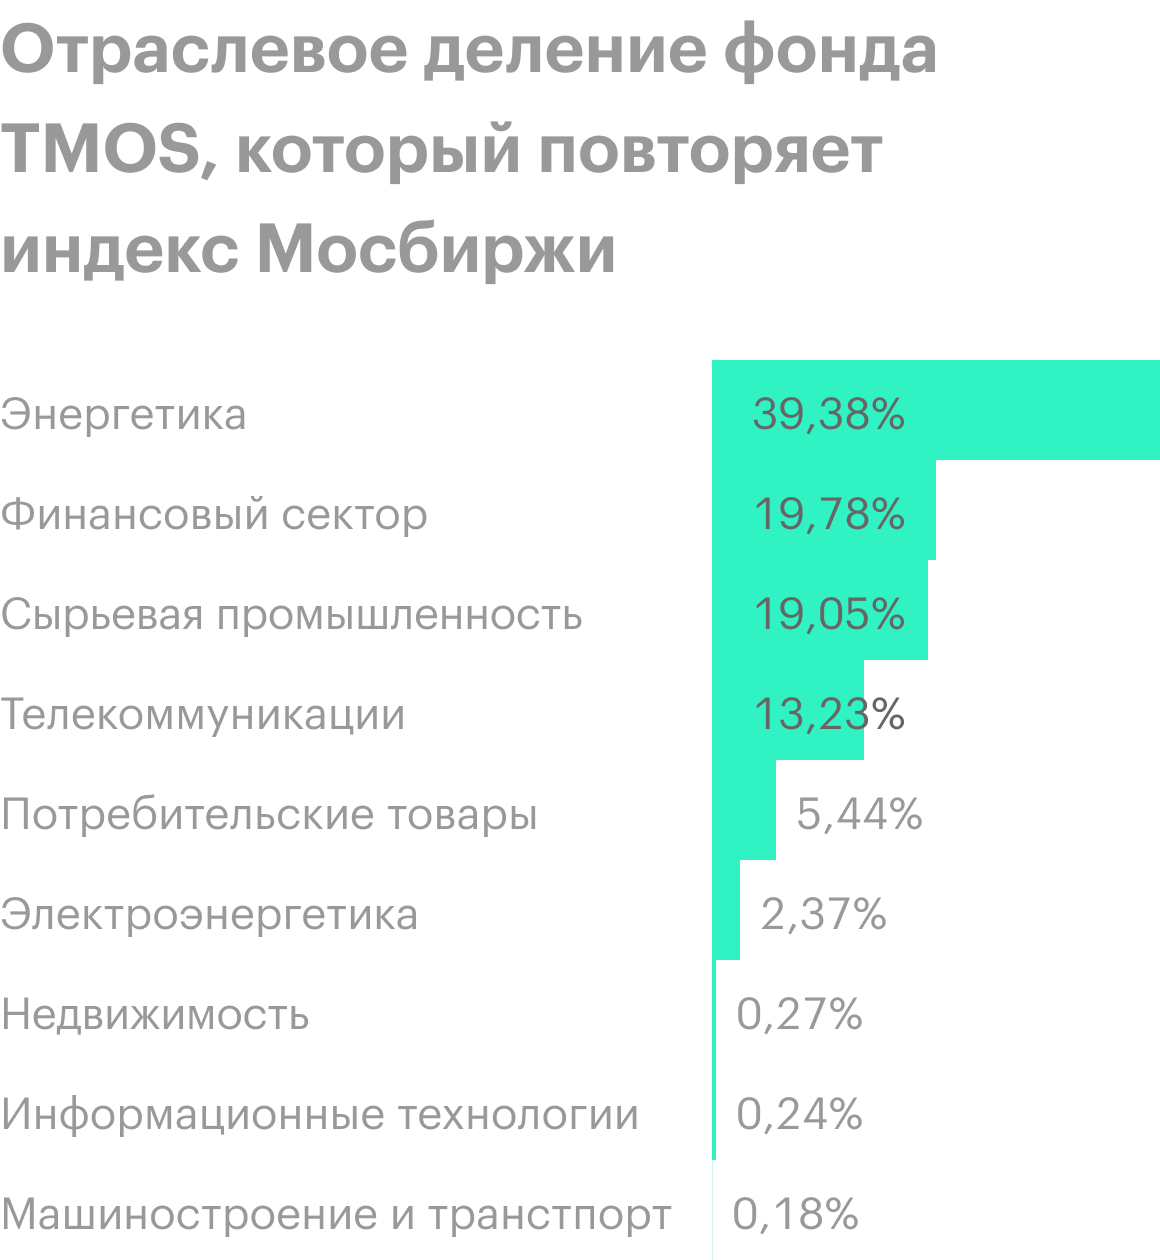 В&nbsp;индексе 42&nbsp;компании, которые составляют 80% совокупной капитализации российского фондового рынка. Он отражает характер российской экономики